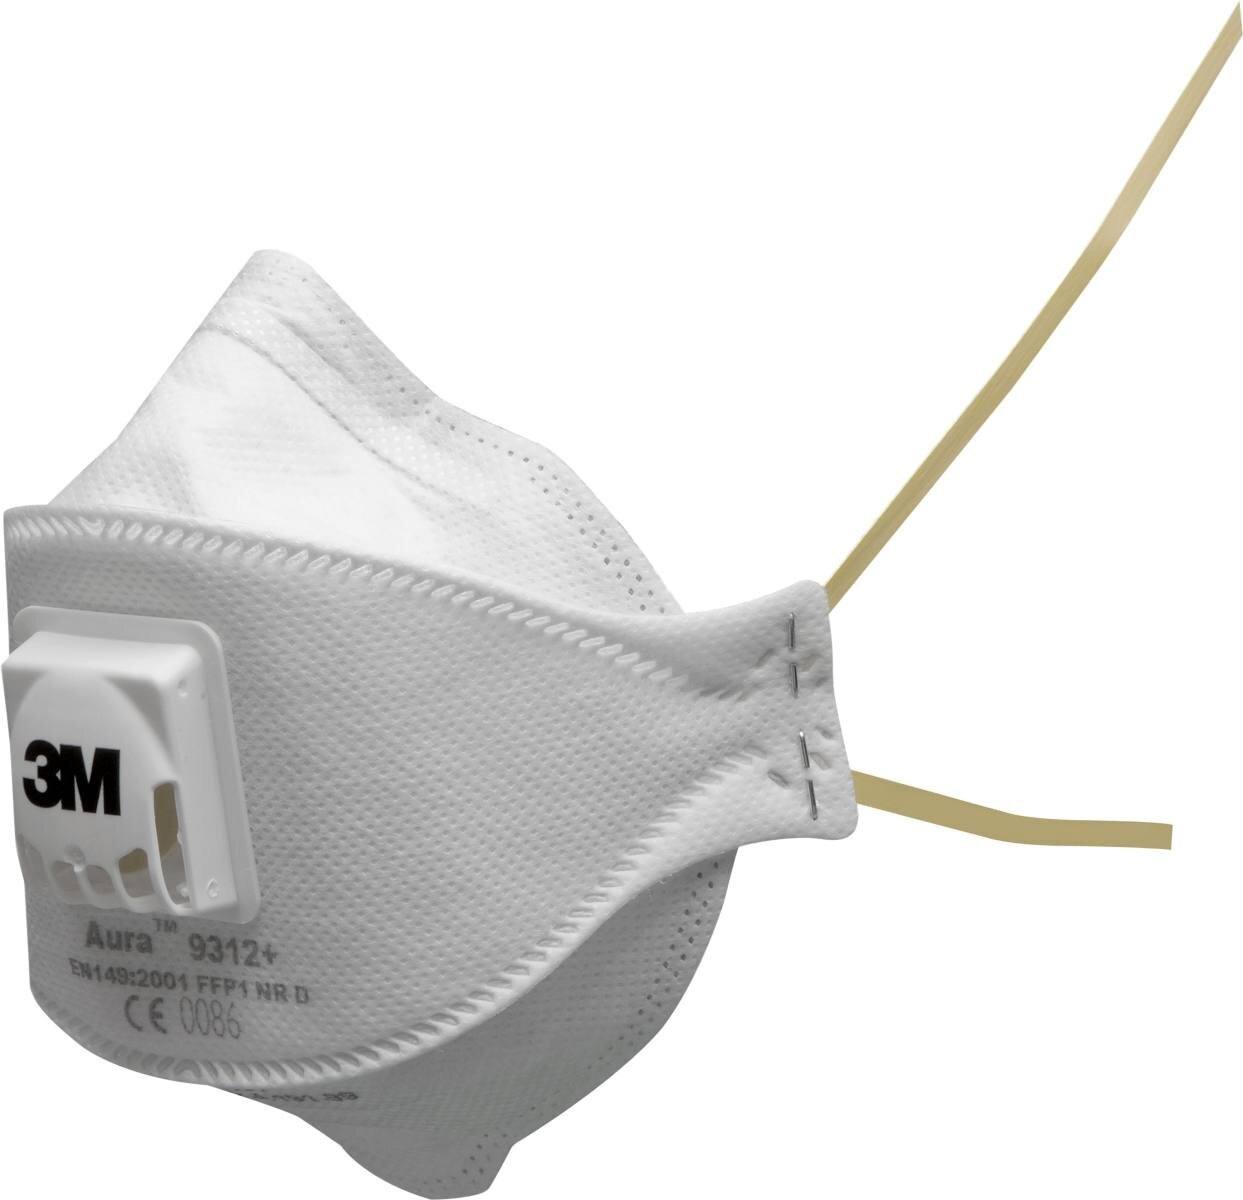 3M 9312 Aura Masque de protection respiratoire FFP1 avec valve d'expiration Cool-Flow, jusqu'à 4 fois la valeur limite (emballage individuel hygiénique)